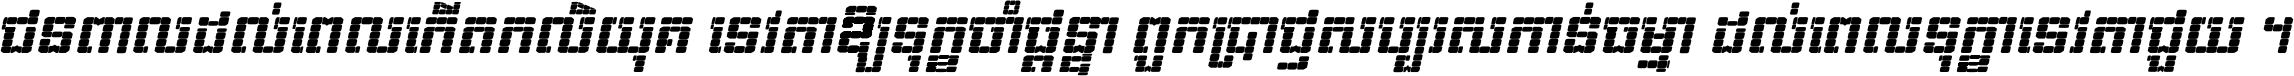 Kh Baphnom 02 Pixel Italic